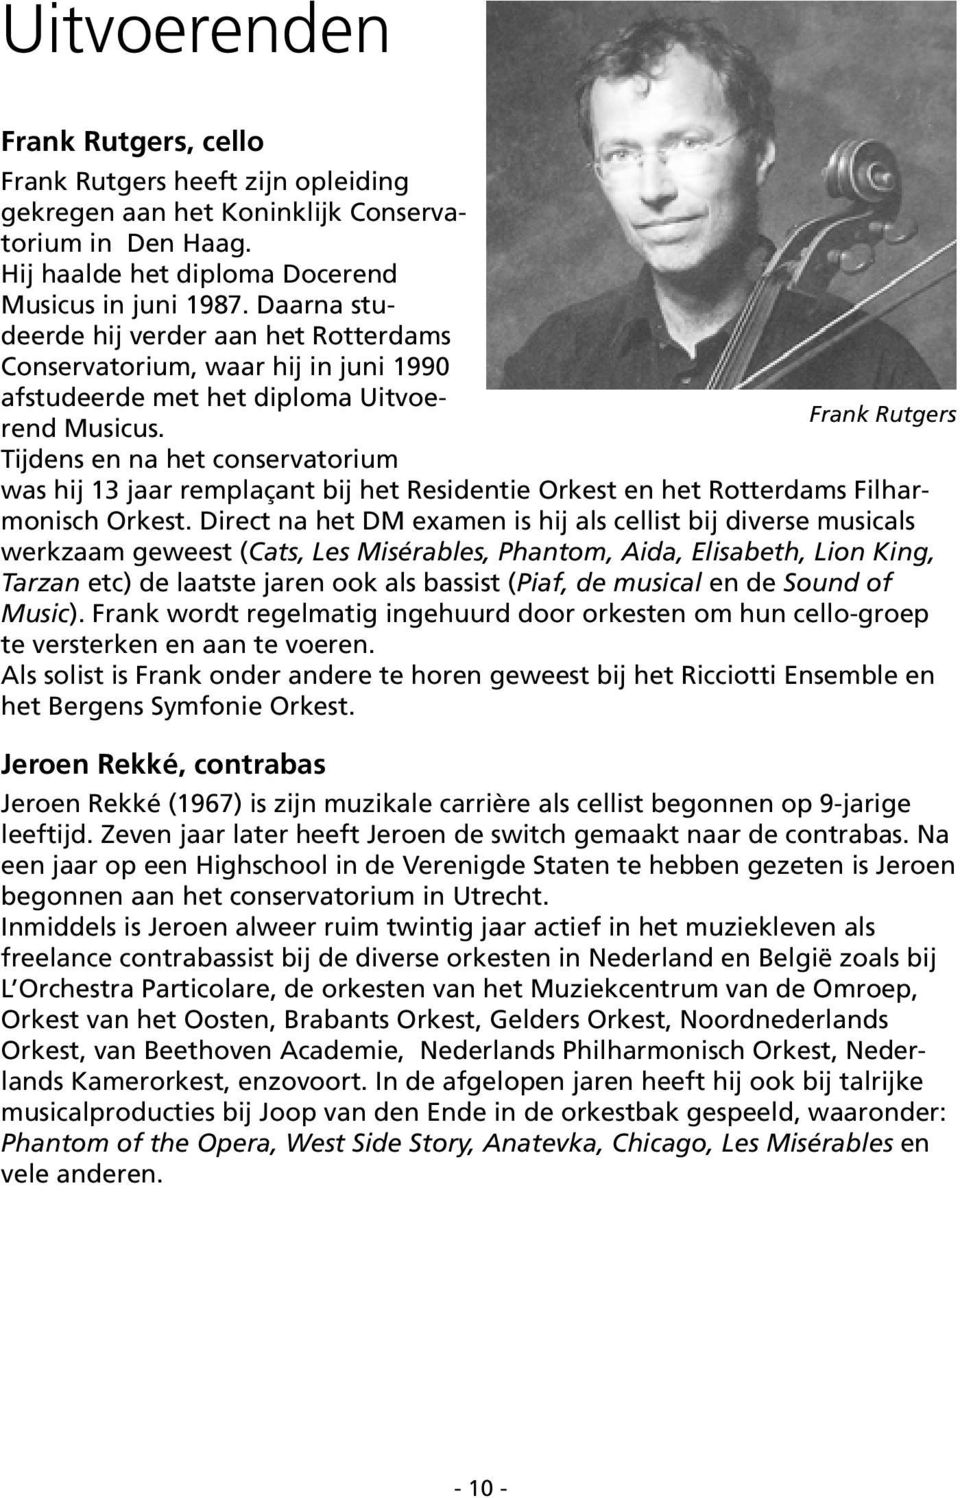 Frank Rutgers Tijdens en na het conservatorium was hij 13 jaar remplaçant bij het Residentie Orkest en het Rotterdams Filharmonisch Orkest.